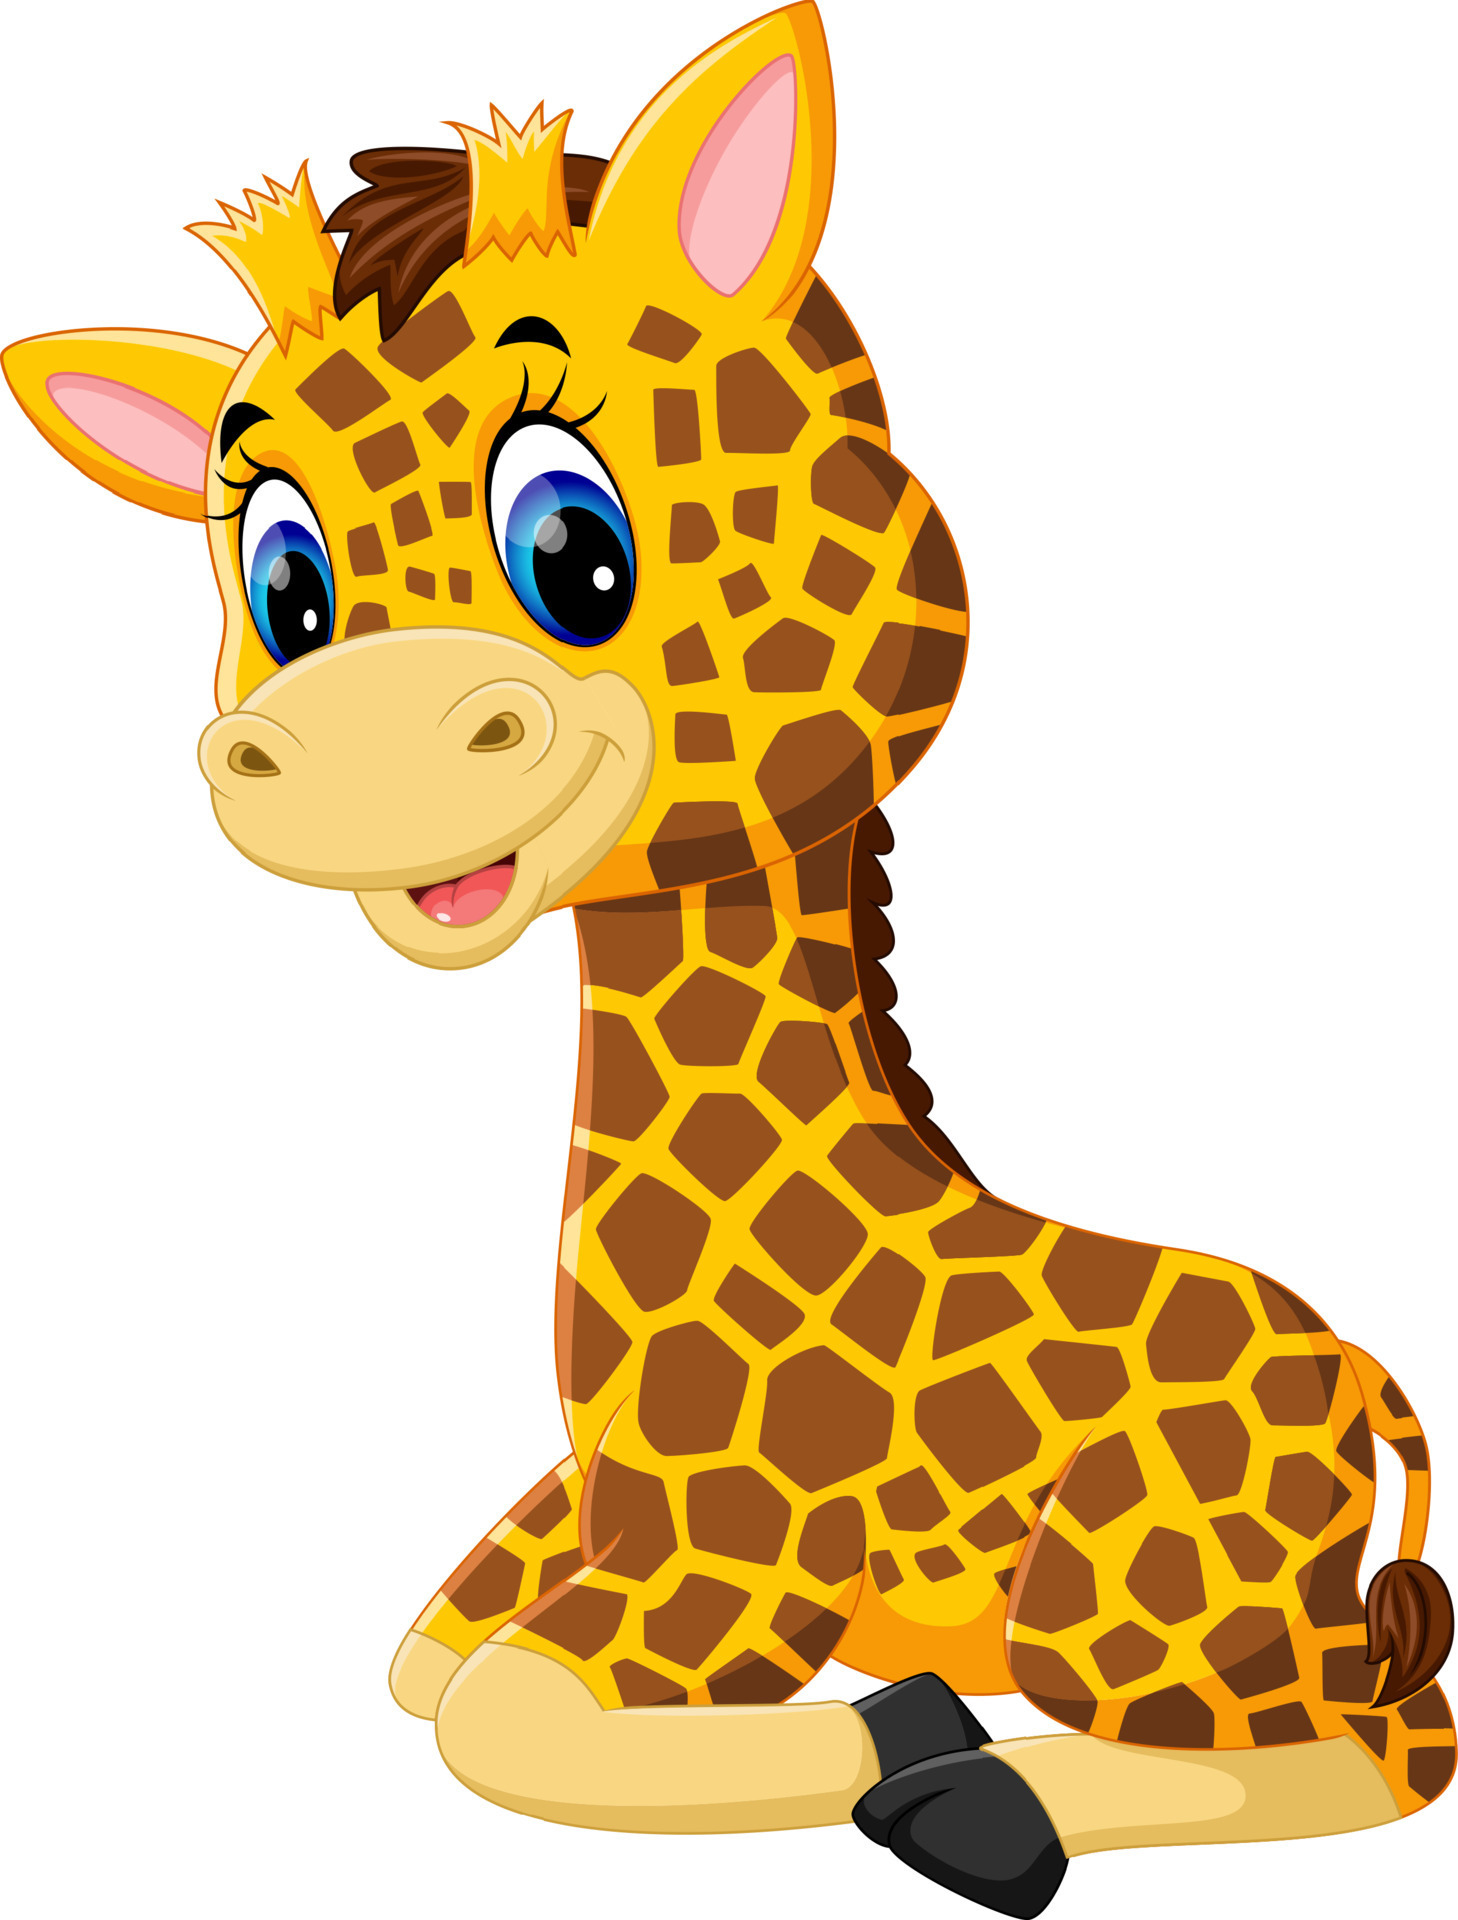 Cute giraffe cartoon of illustration 7916301 Vector Art at Vecteezy